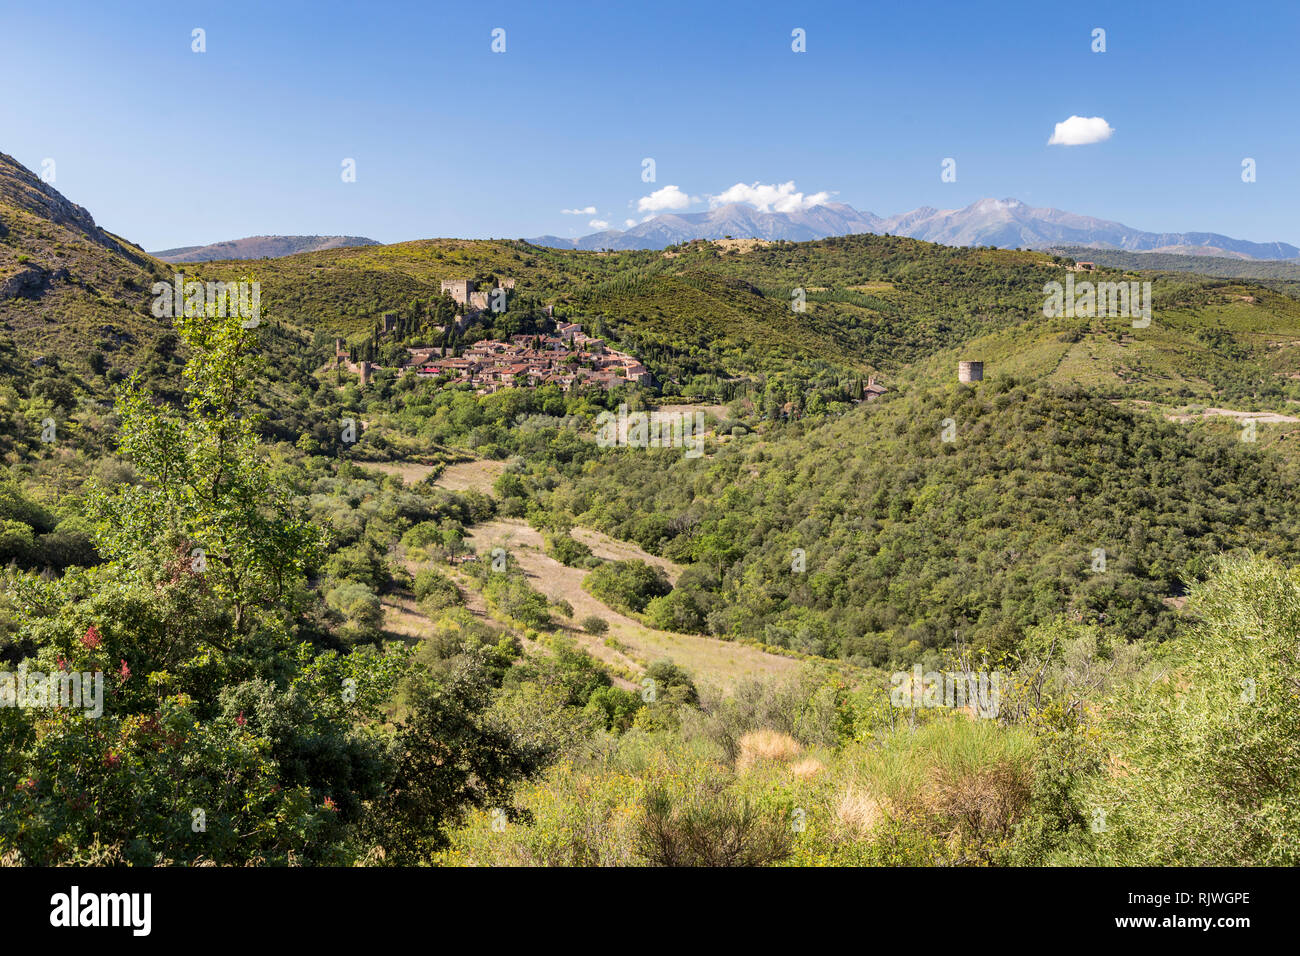 Distalen Blick auf eines der schönsten Dörfer in Südfrankreich: Castelnou. Stockfoto